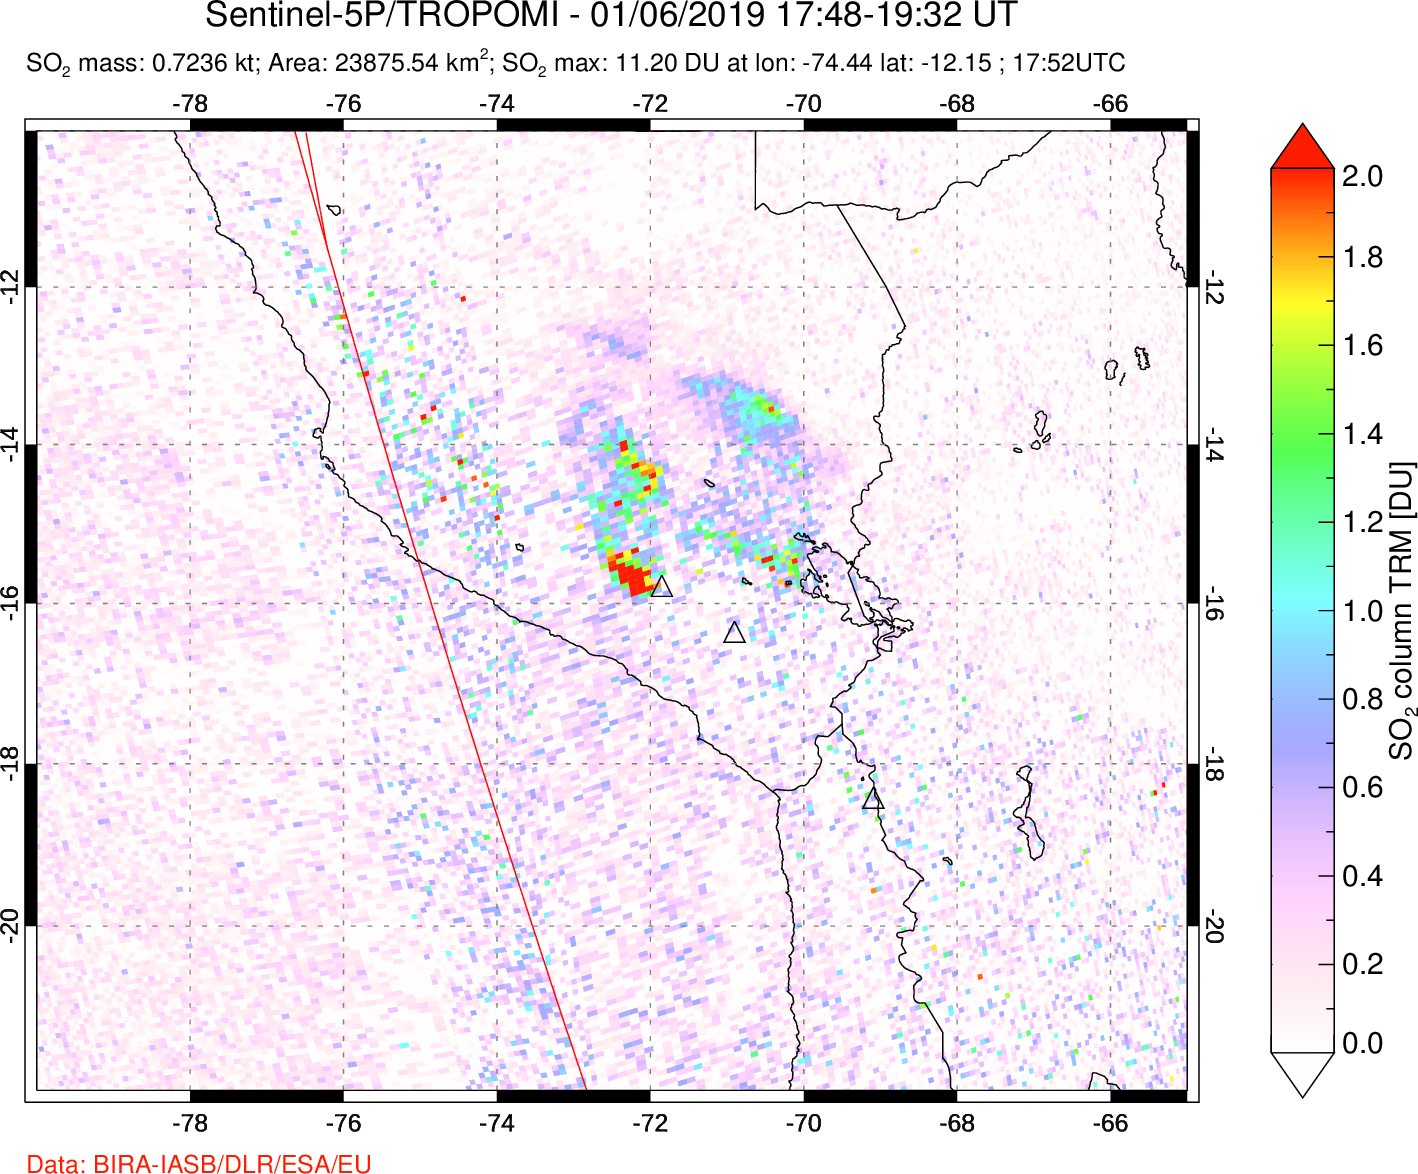 A sulfur dioxide image over Peru on Jan 06, 2019.